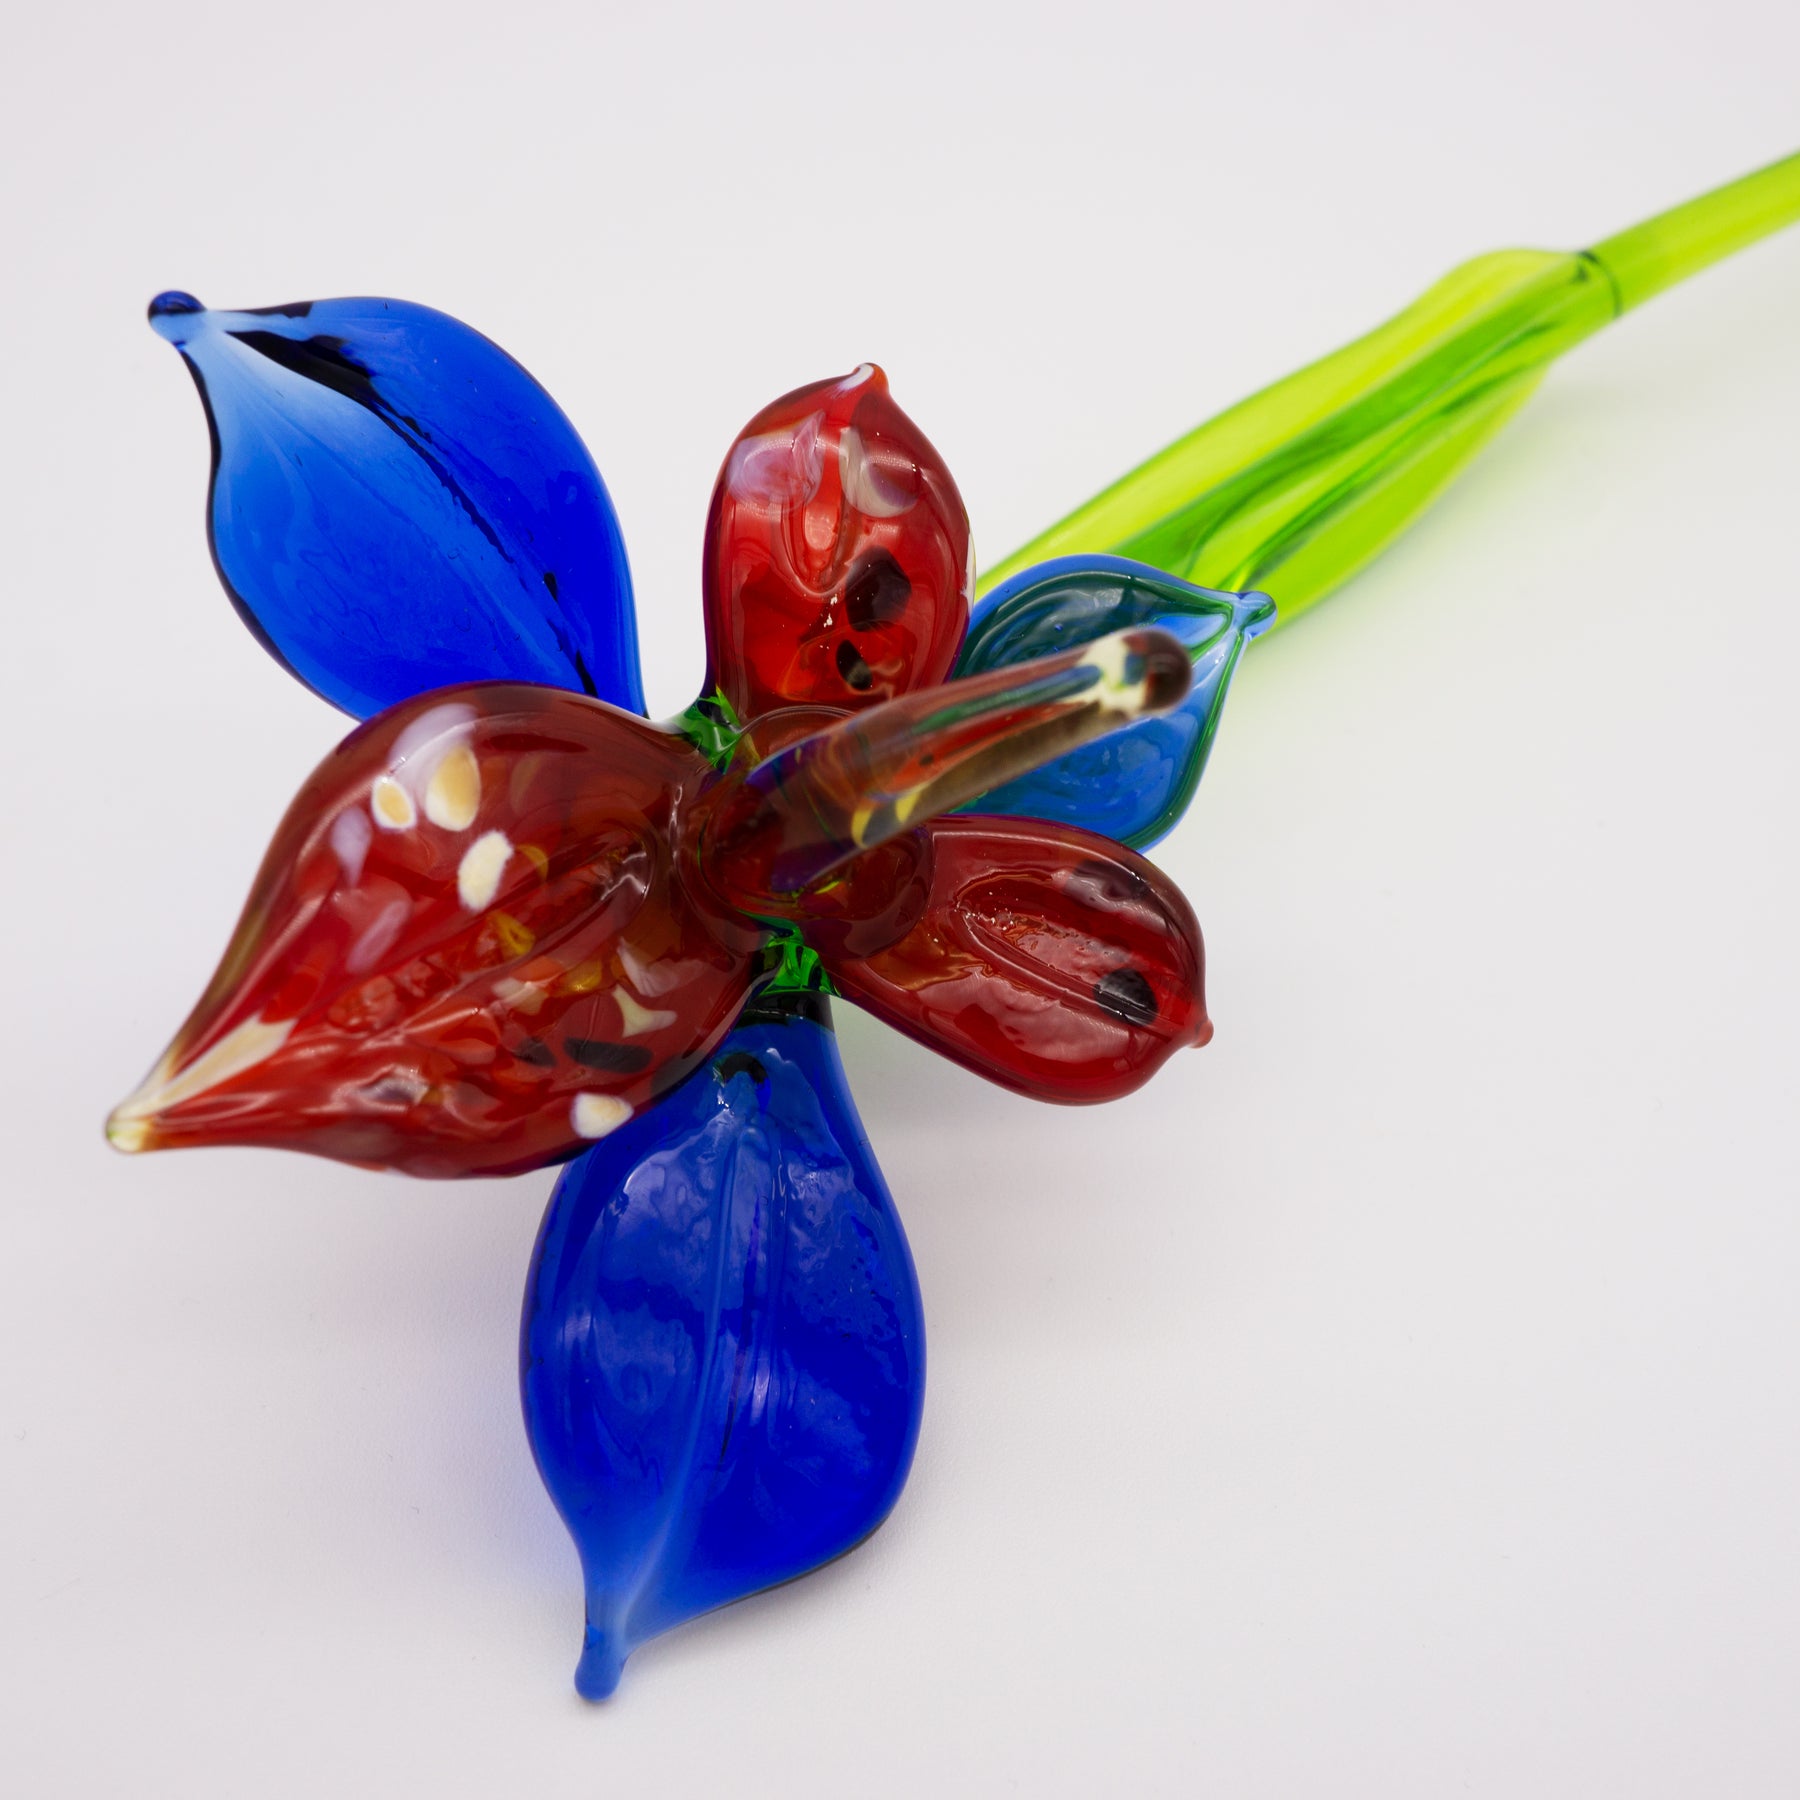 Blau und rote Orchidee aus Glas